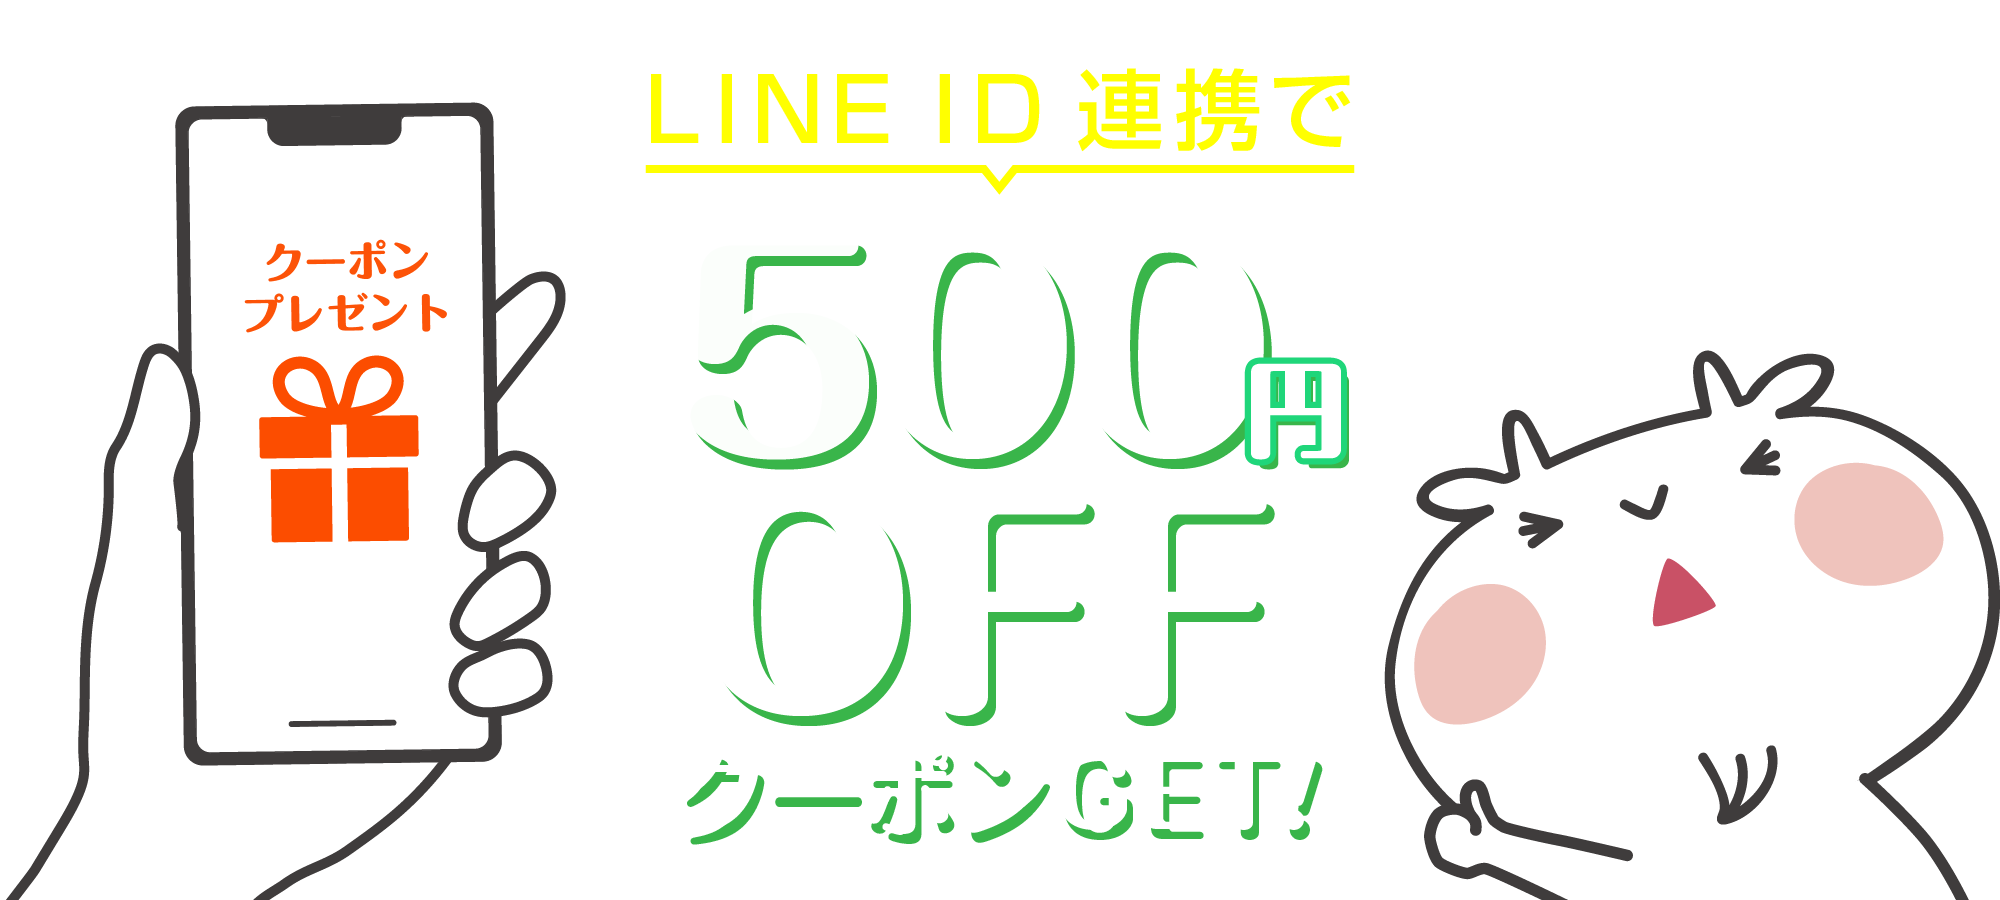 LINE ID連携で500円OFFクーポンGET!